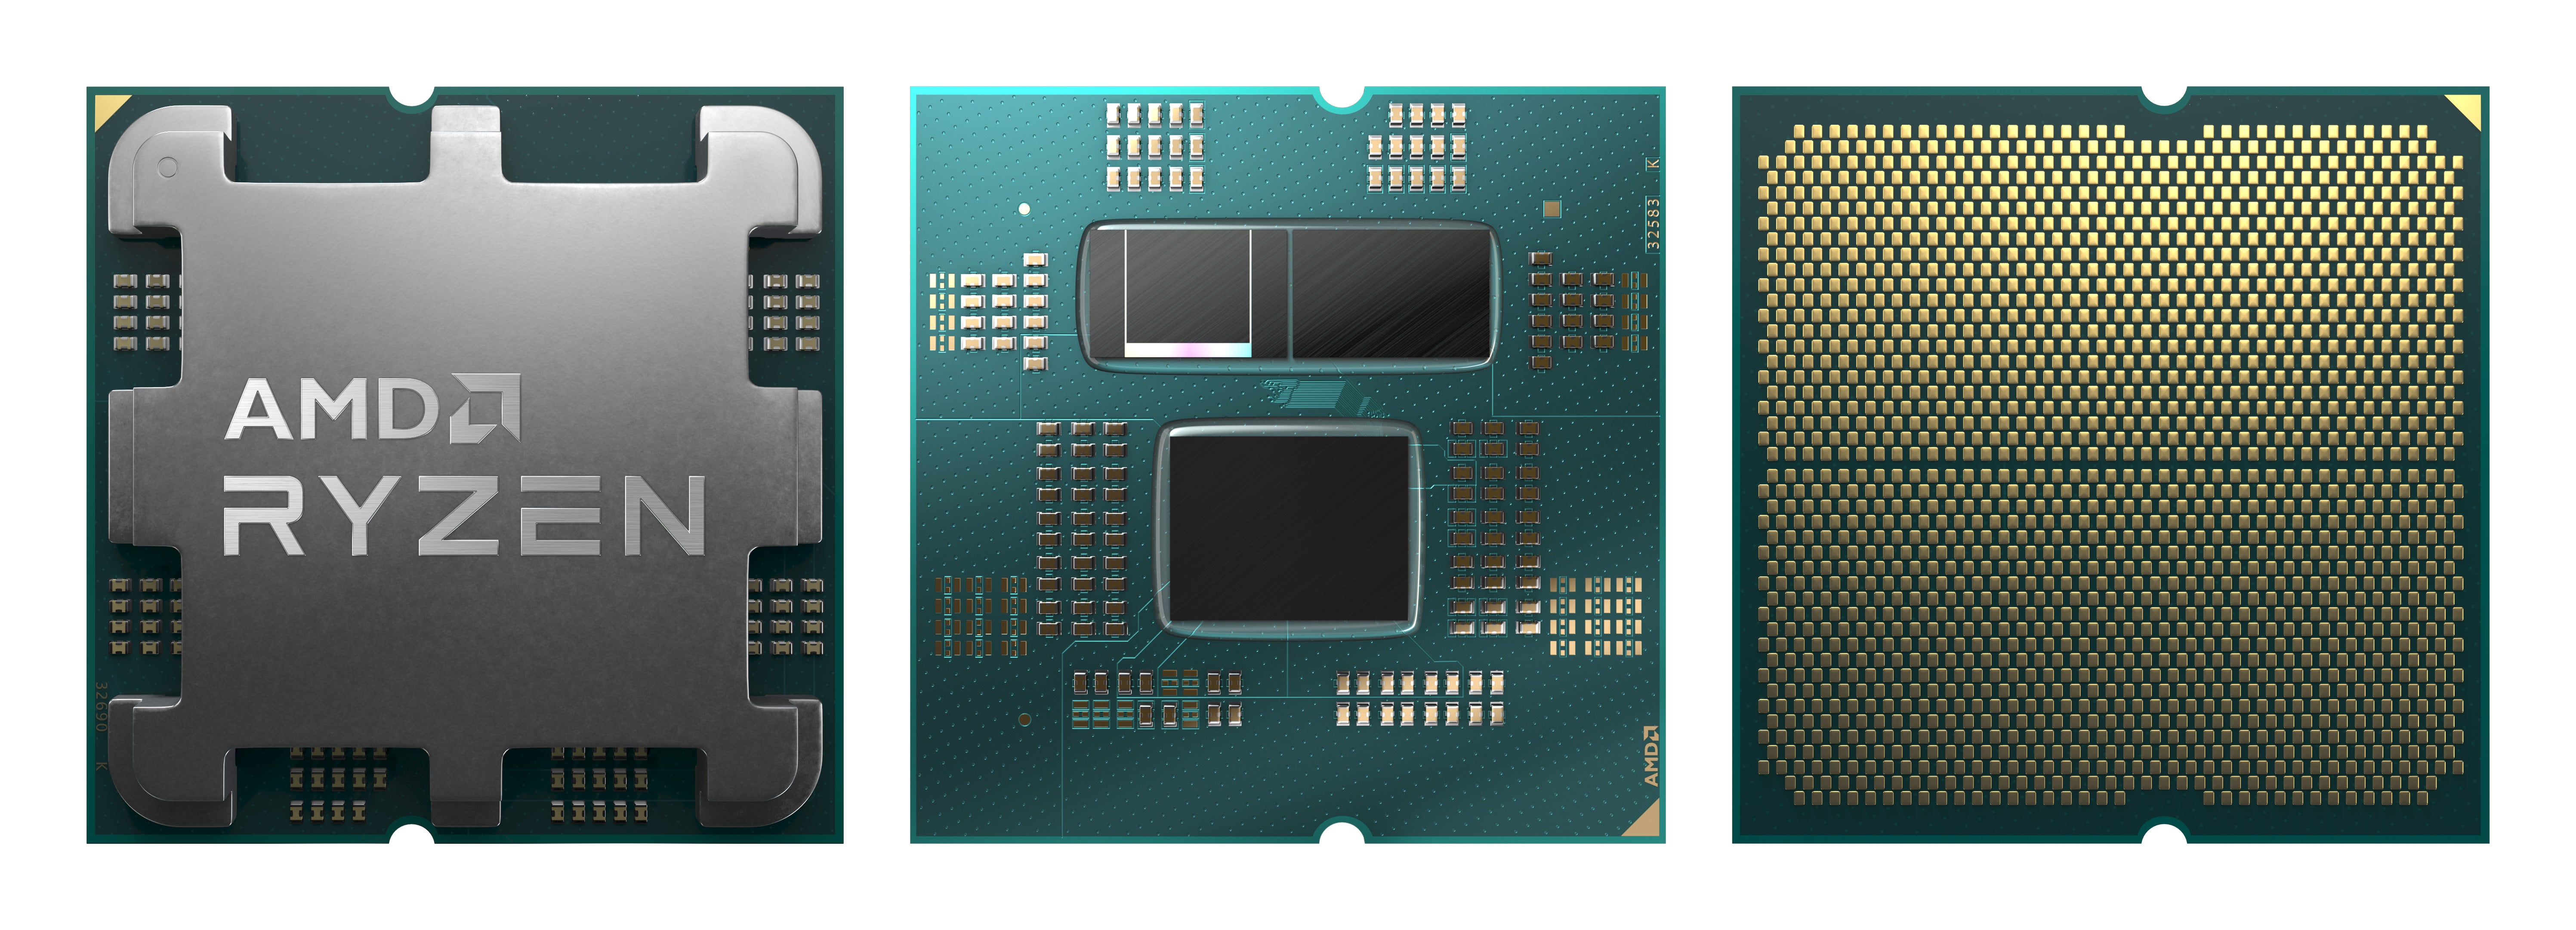 Rendus du processeur Ryzen 9 7950x : couvercle (à gauche), couvercle montrant le cache 3D sur un chiplet (au milieu), broches du bas (à droite)